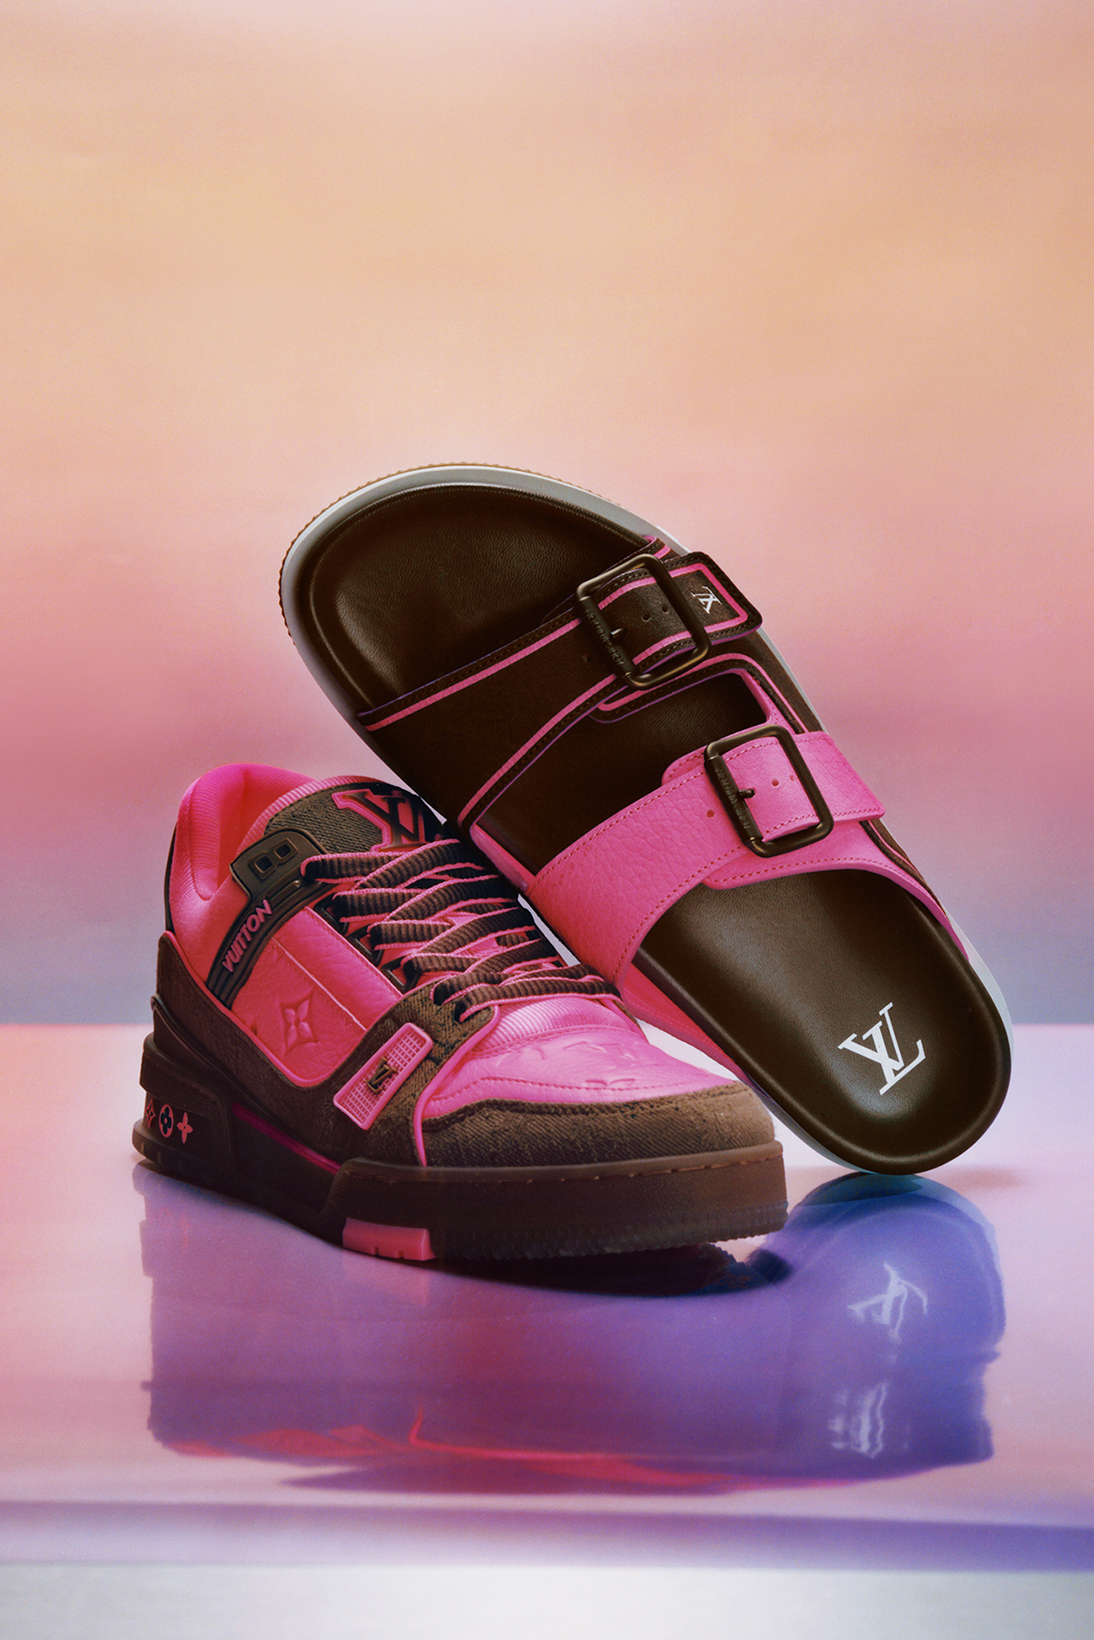 Louis Vuitton выпустил новые кроссовки и сандалии (фото 7)